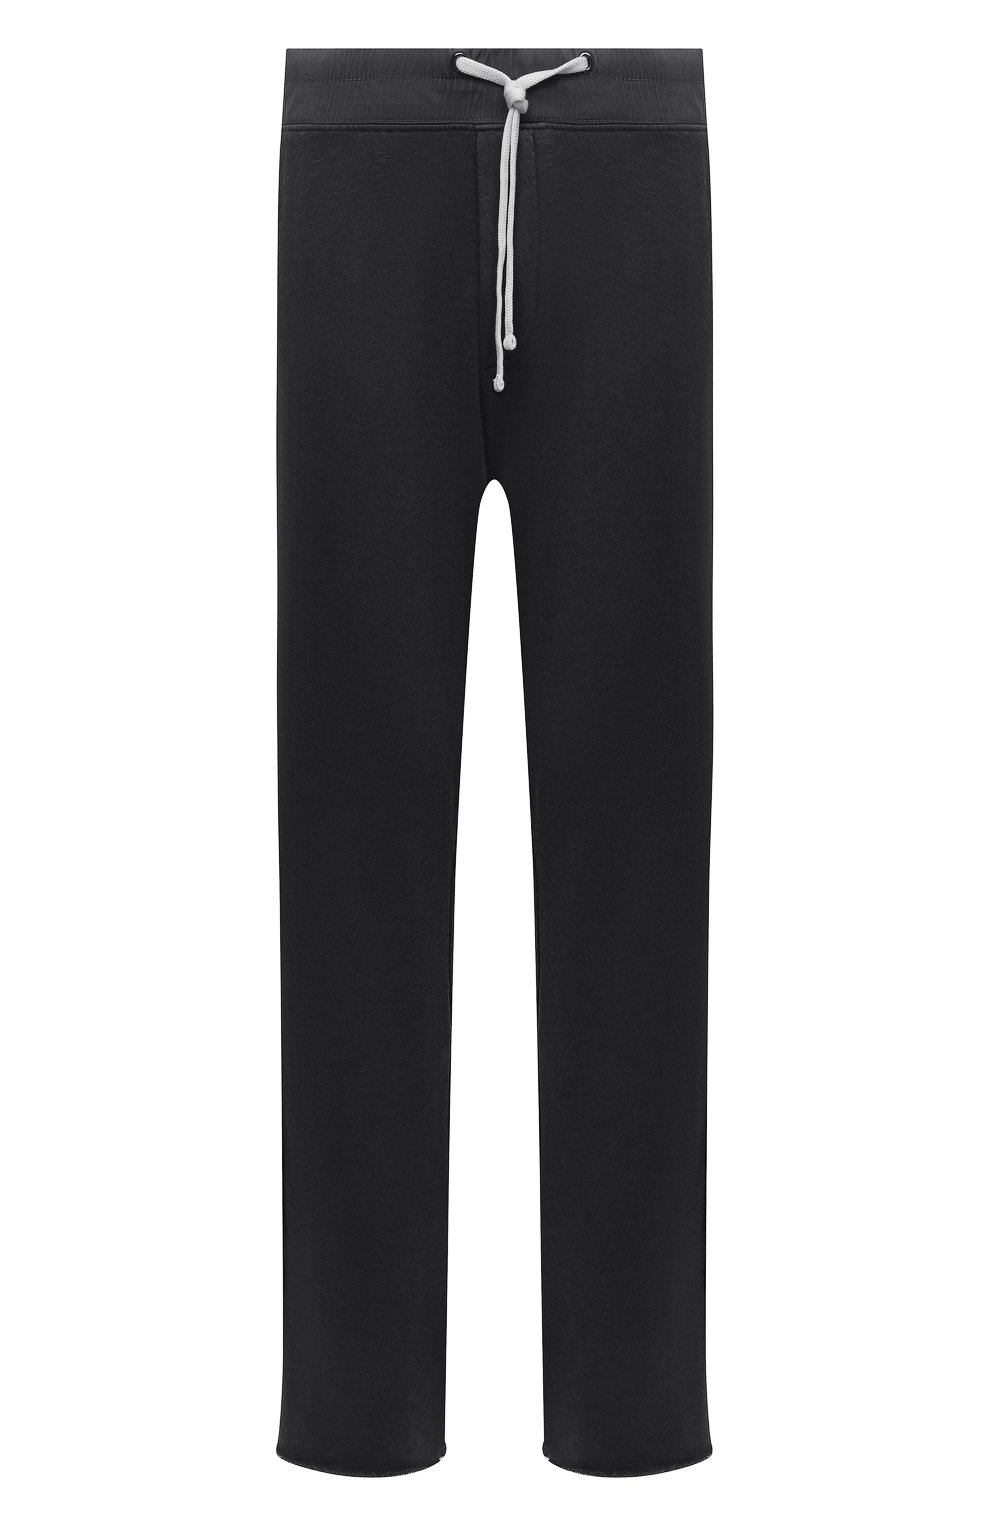 Мужские хлопковые брюки JAMES PERSE серого цвета, арт. MXA1352 | Фото 1 (Длина (брюки, джинсы): Стандартные; Случай: Повседневный; Материал внешний: Хлопок; Стили: Спорт-шик)